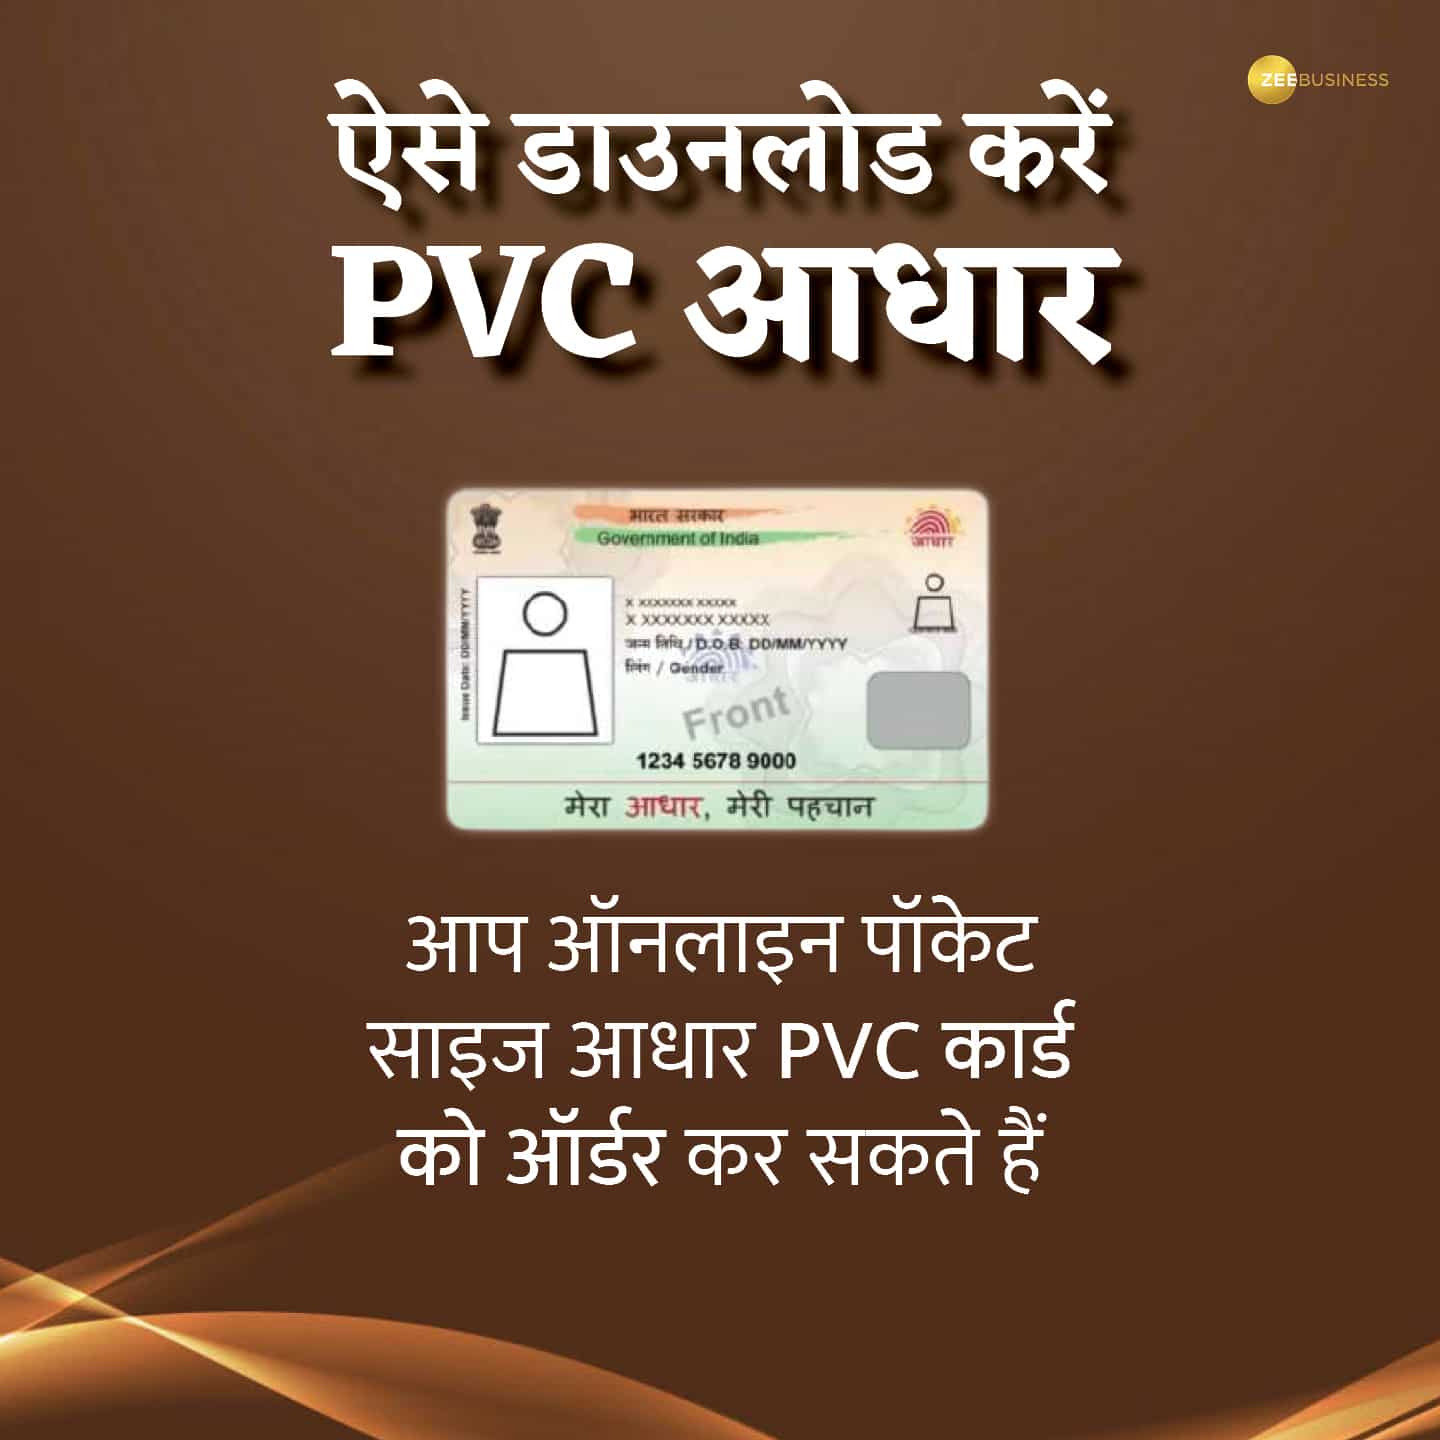 कैसे डाउनलोड करें PVC आधार कार्ड